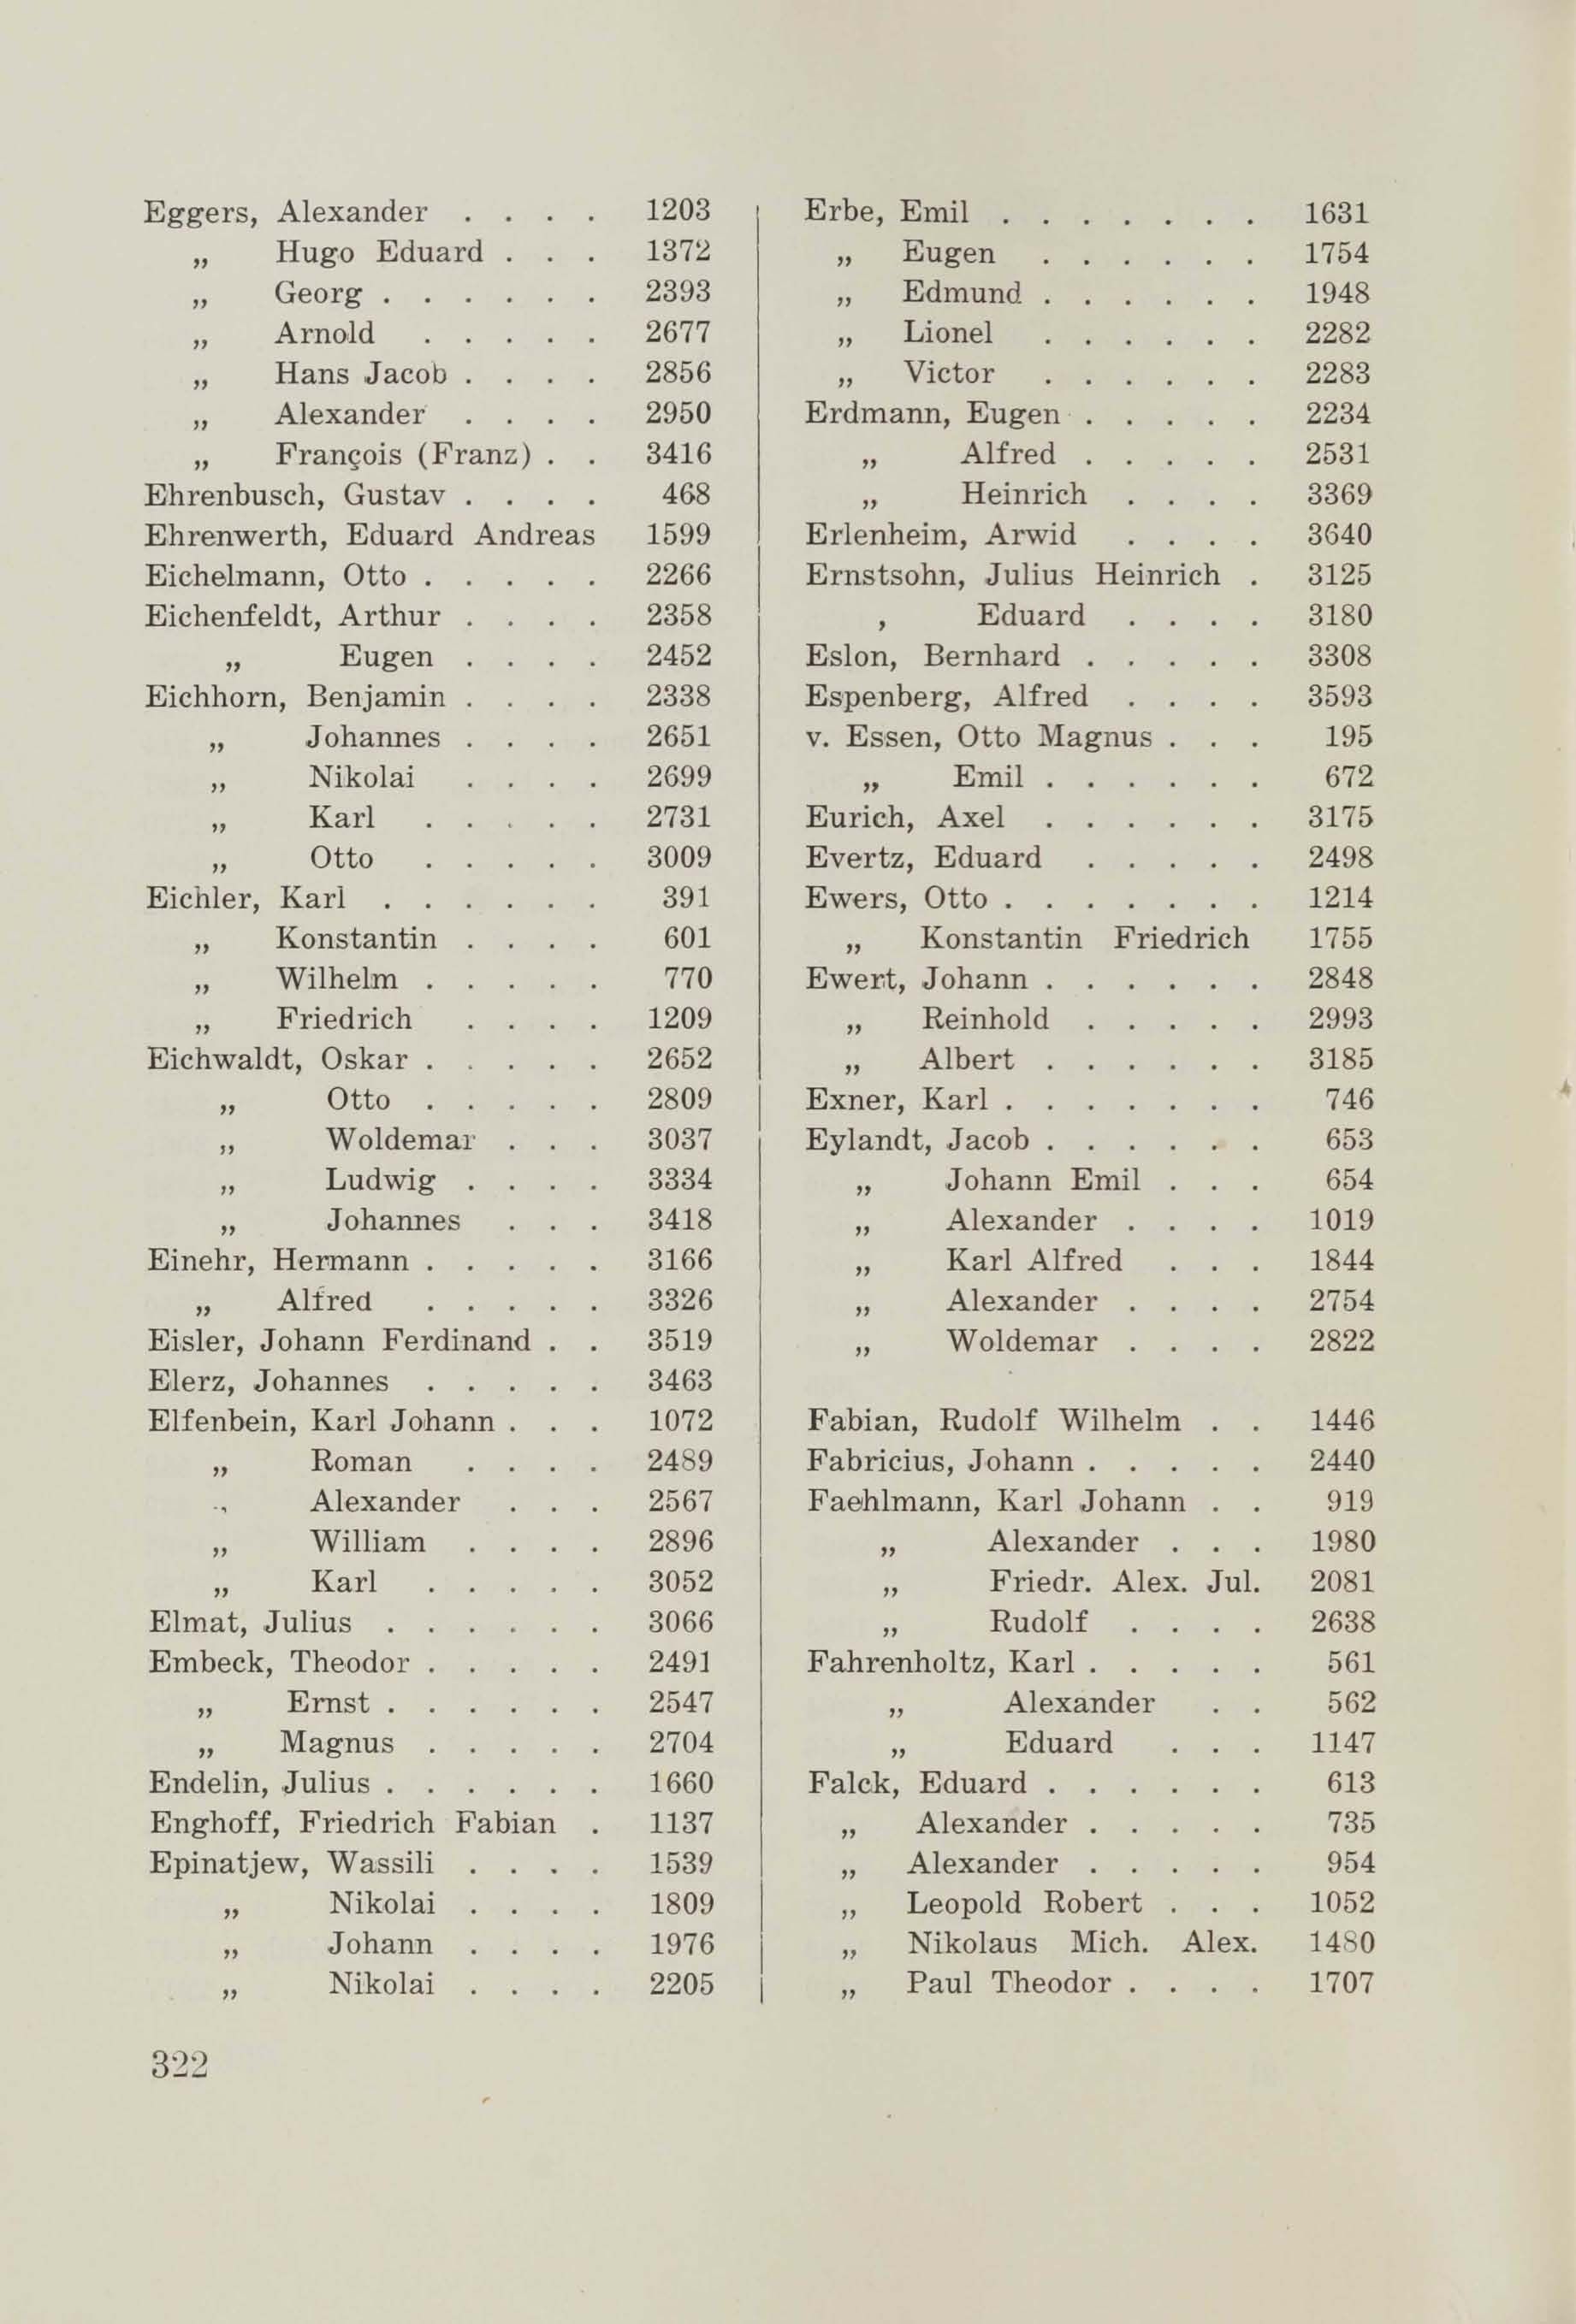 Schüler-Verzeichnis des Revalschen Gouvernements-Gymnasiums 1805–1890 (1931) | 332. (322) Main body of text